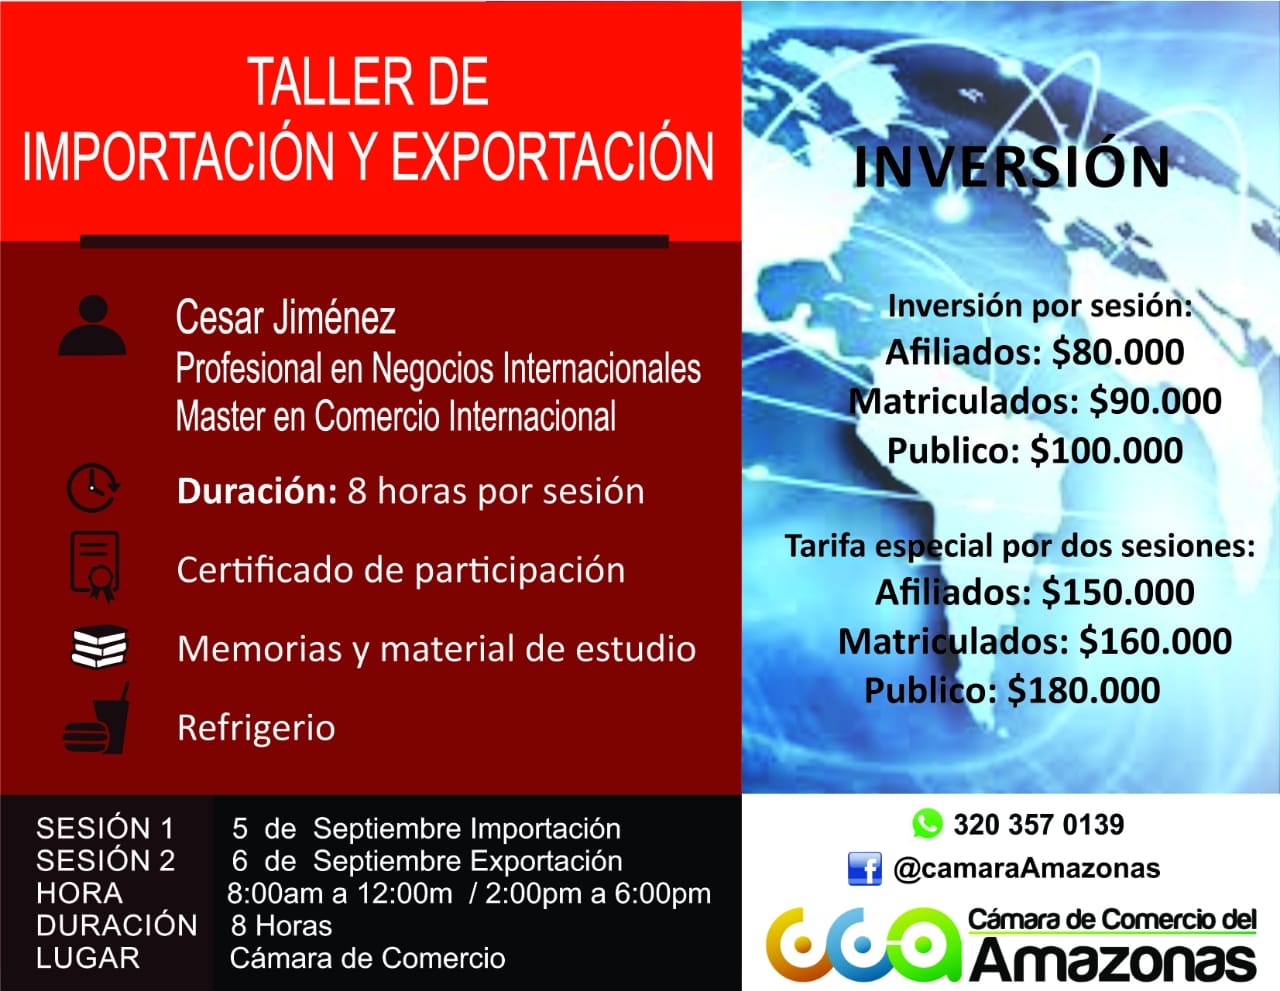 image for Taller de Importación y Exportación